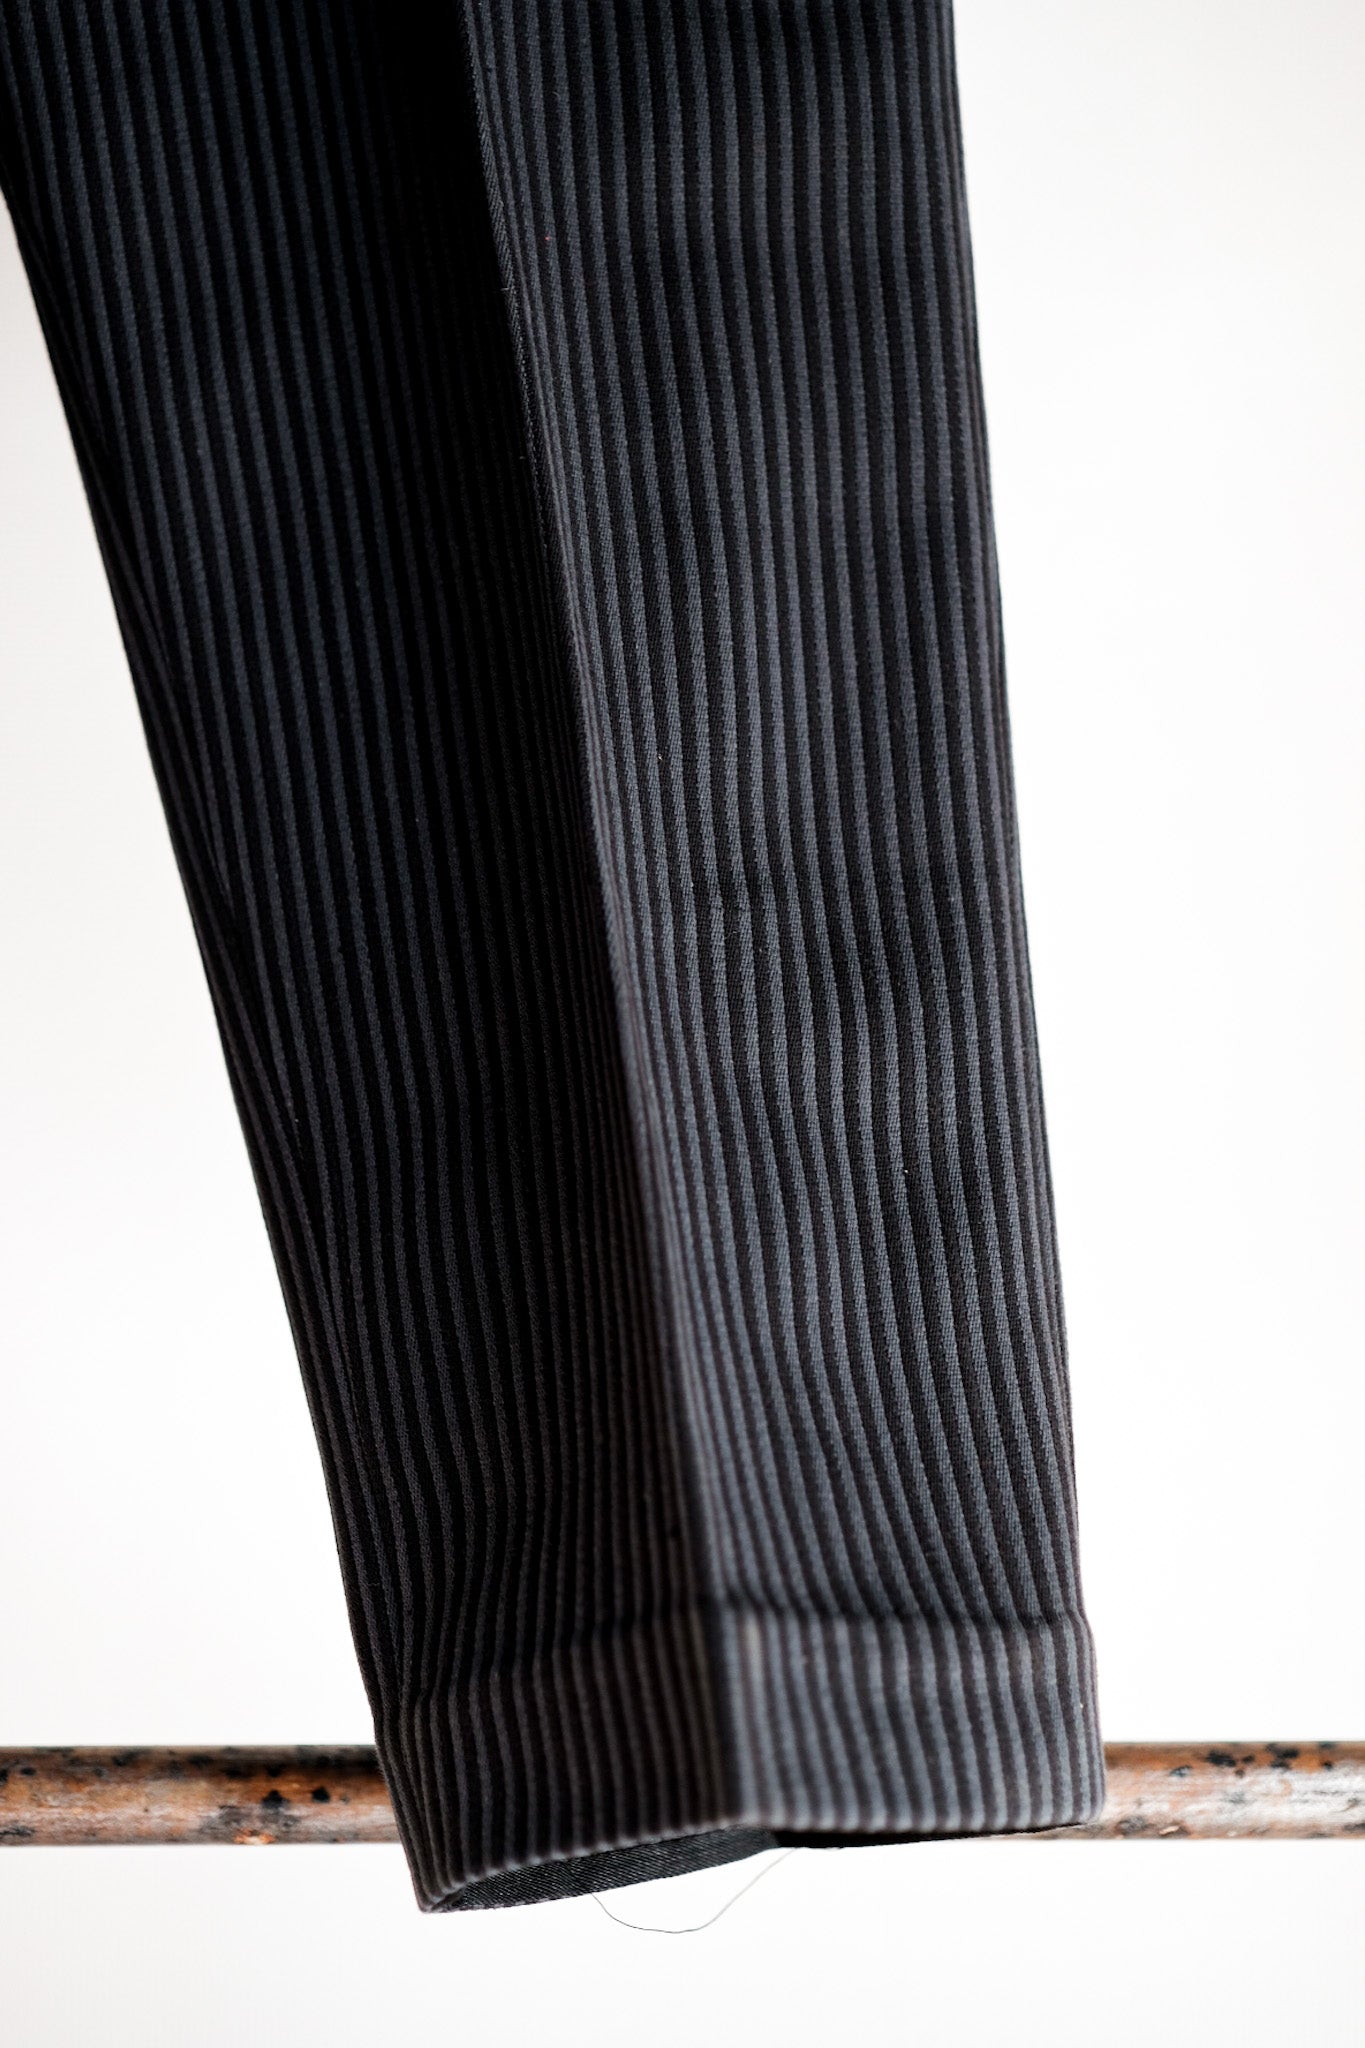 【〜30年代】法國復古棉花式條紋工作褲“死庫存”